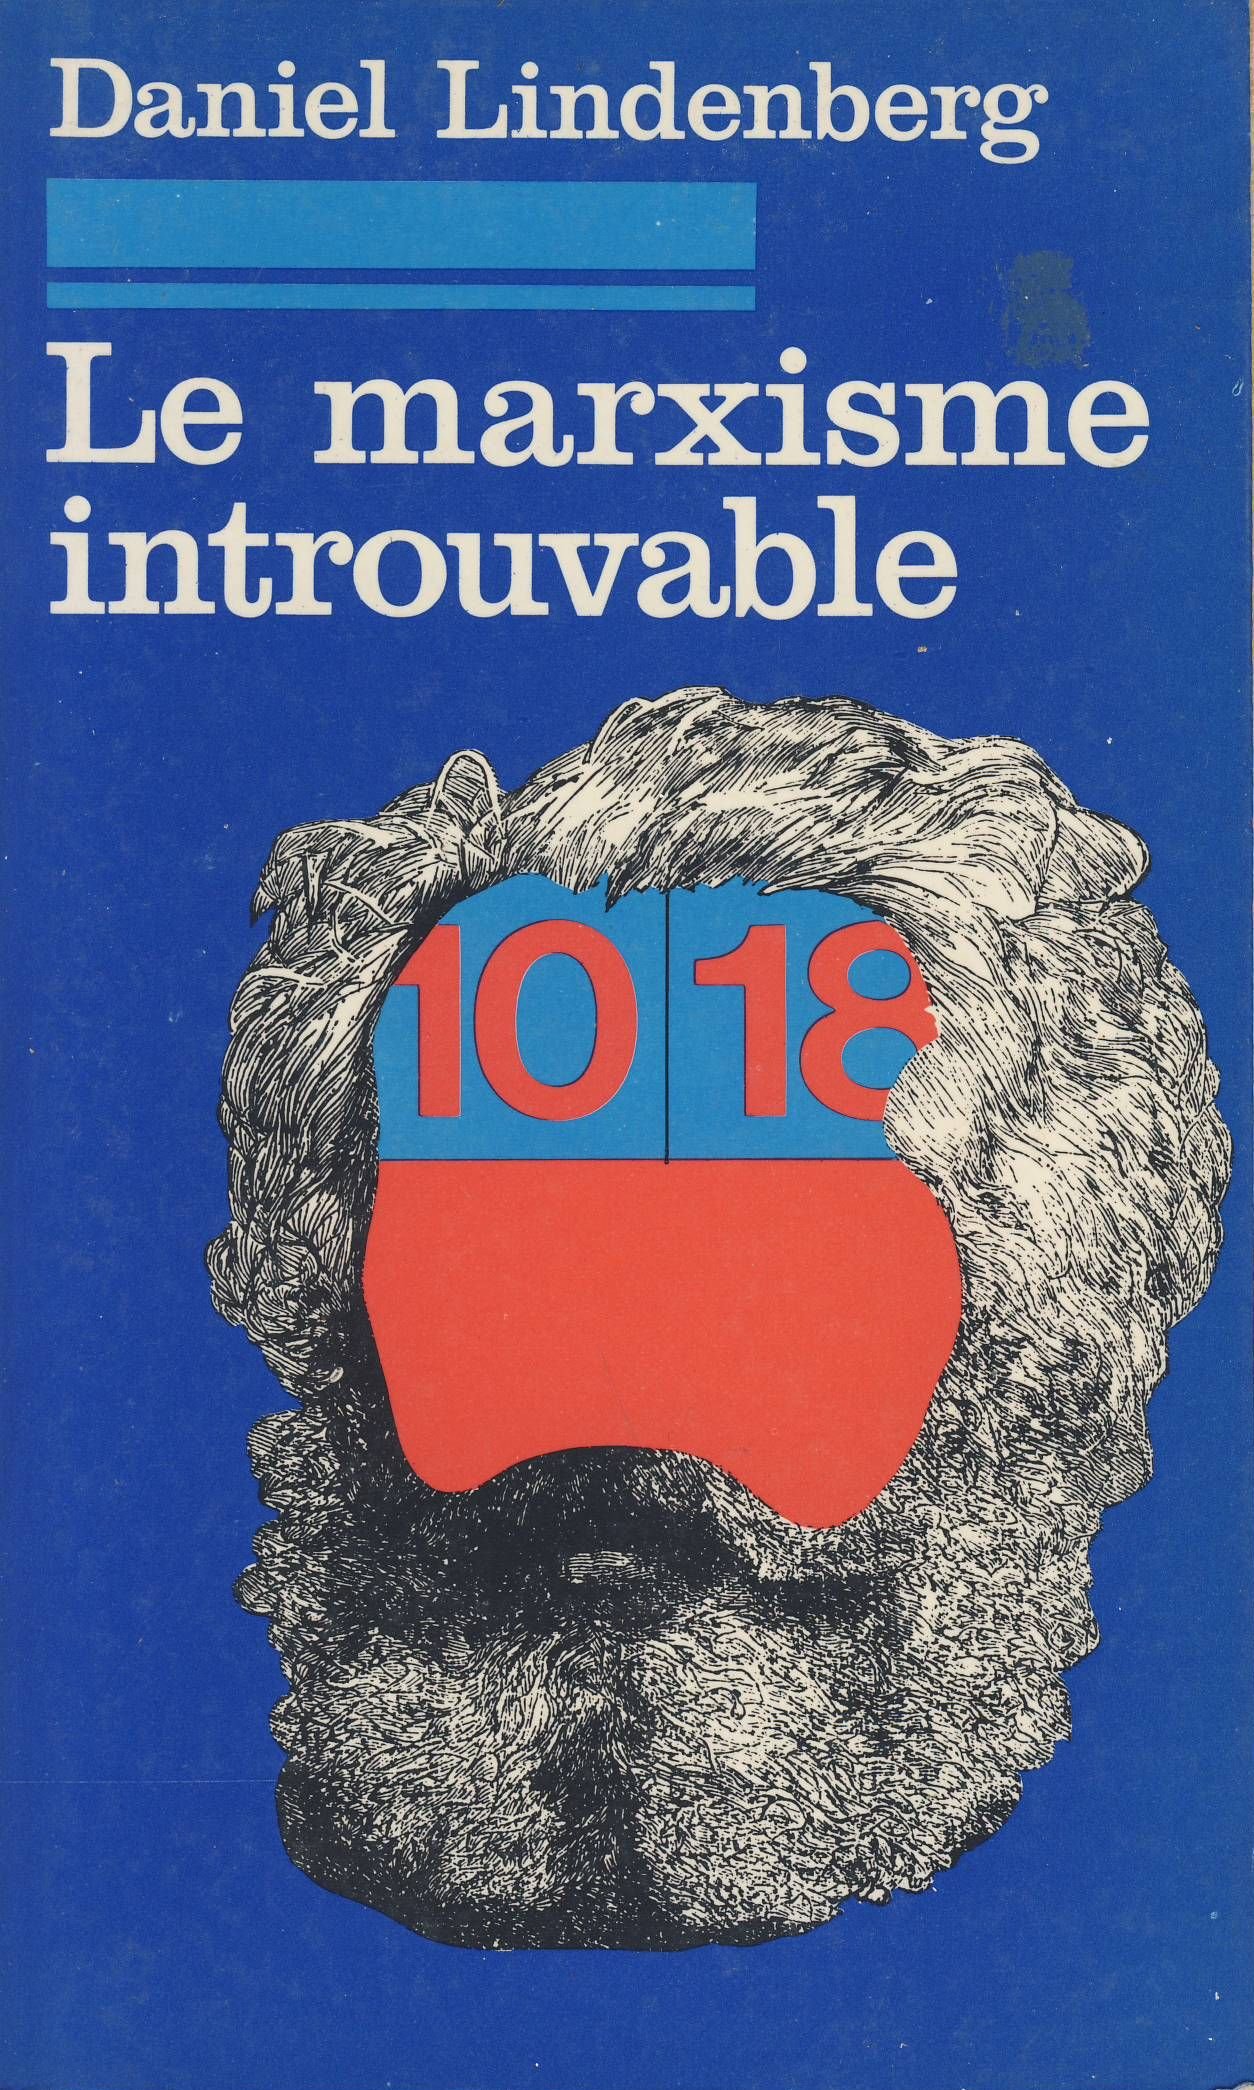 Artykuł powstał między innymi w oparciu o książkę Daniela Lindenberg,a pod tytułem "Le marxisme introuvable".